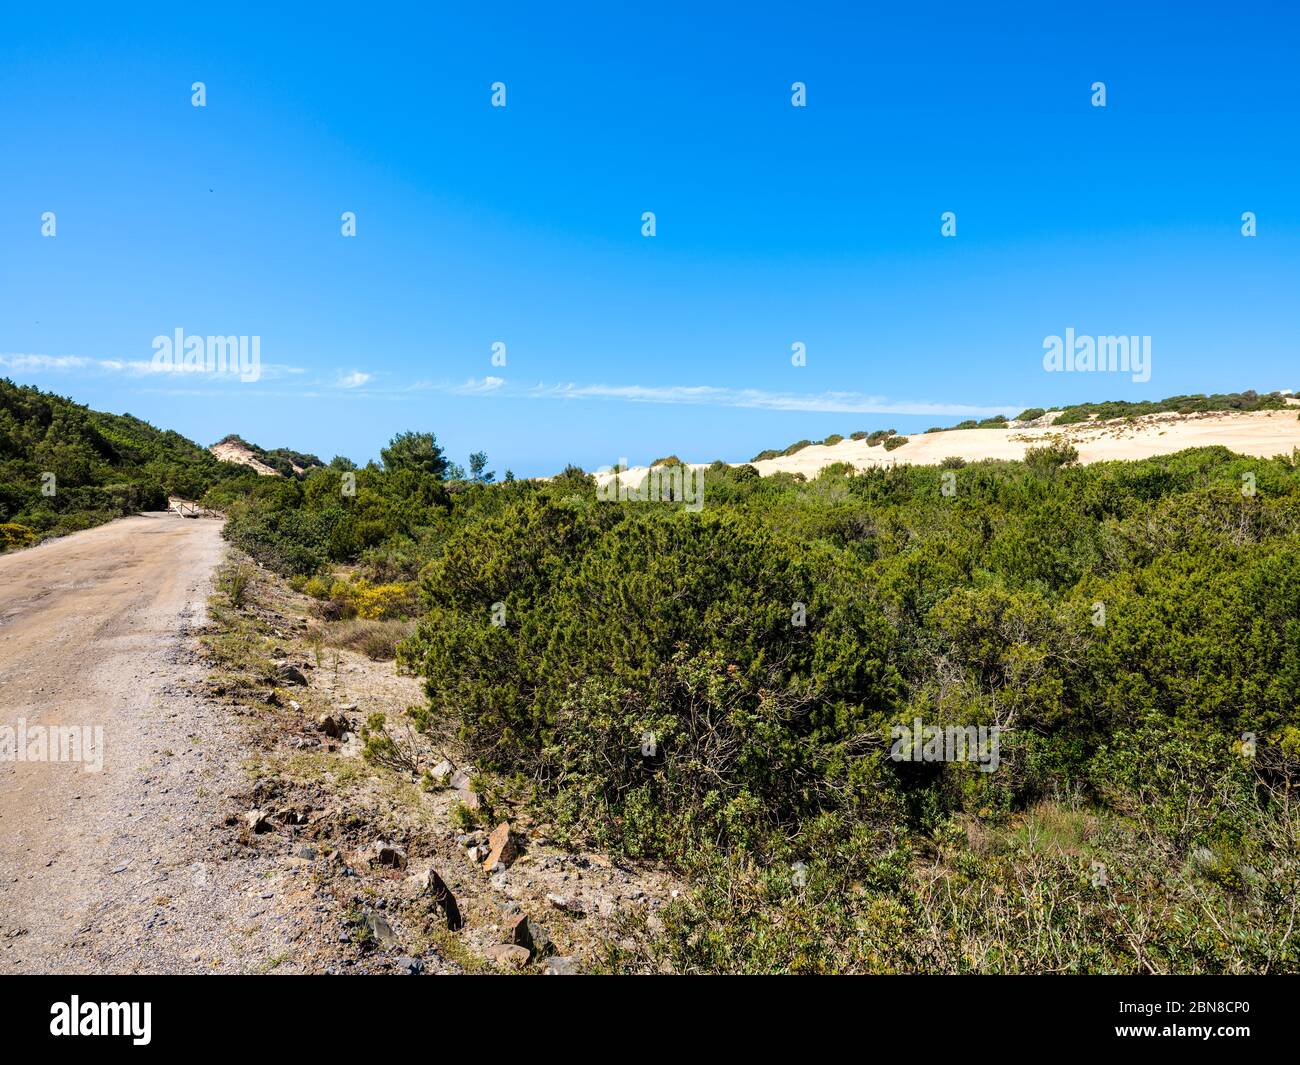 Camino de tierra que conduce a las dunas de Piscinas, entre la vegetación silvestre de enebros y lentejas Foto de stock